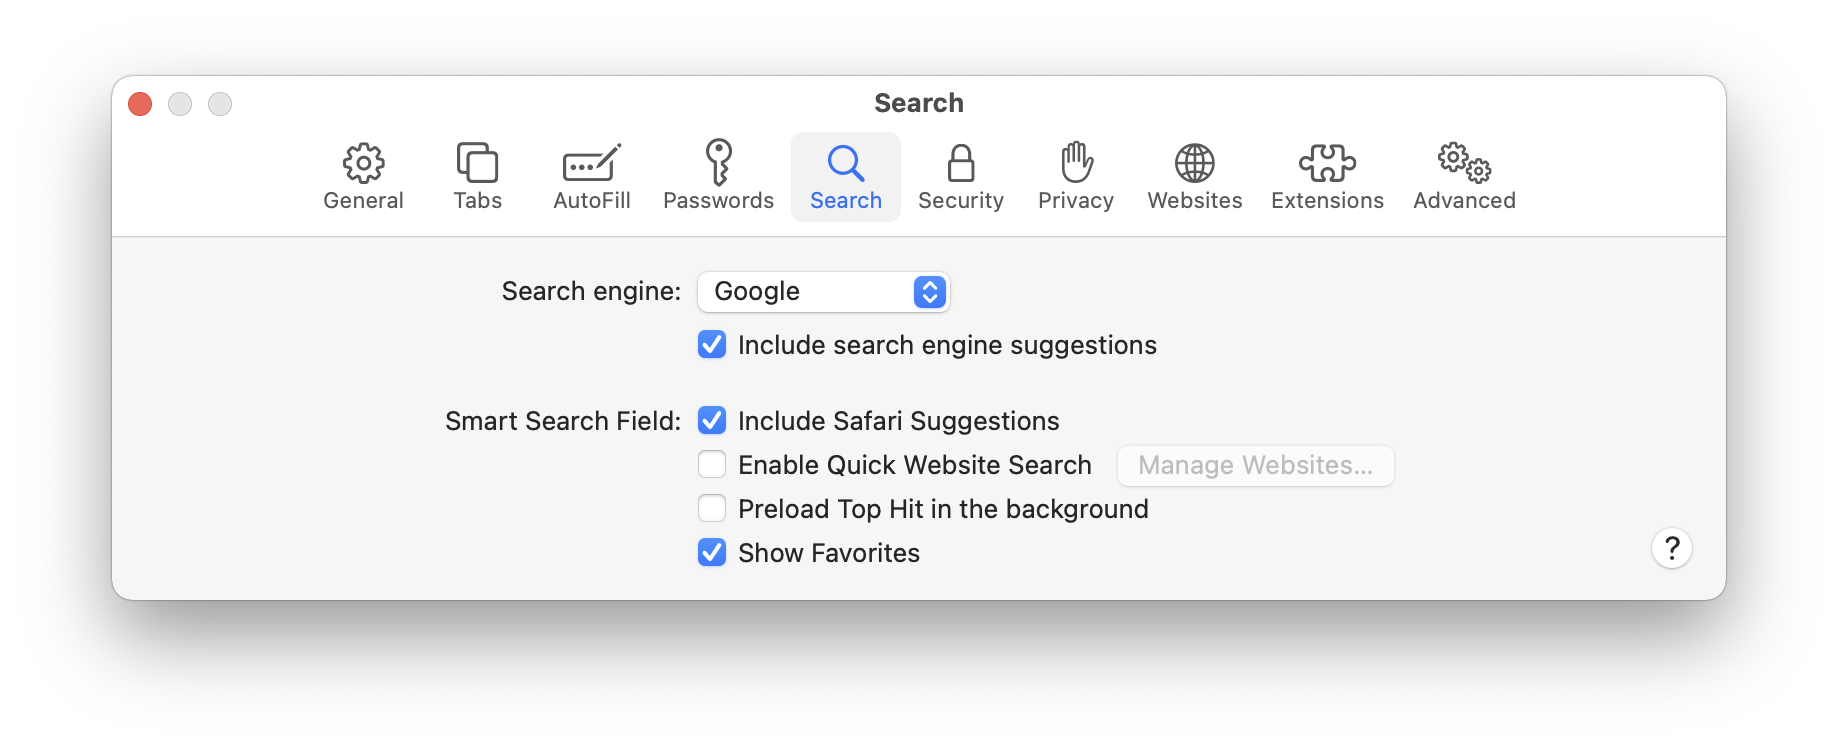 google toolbar for mac safari download